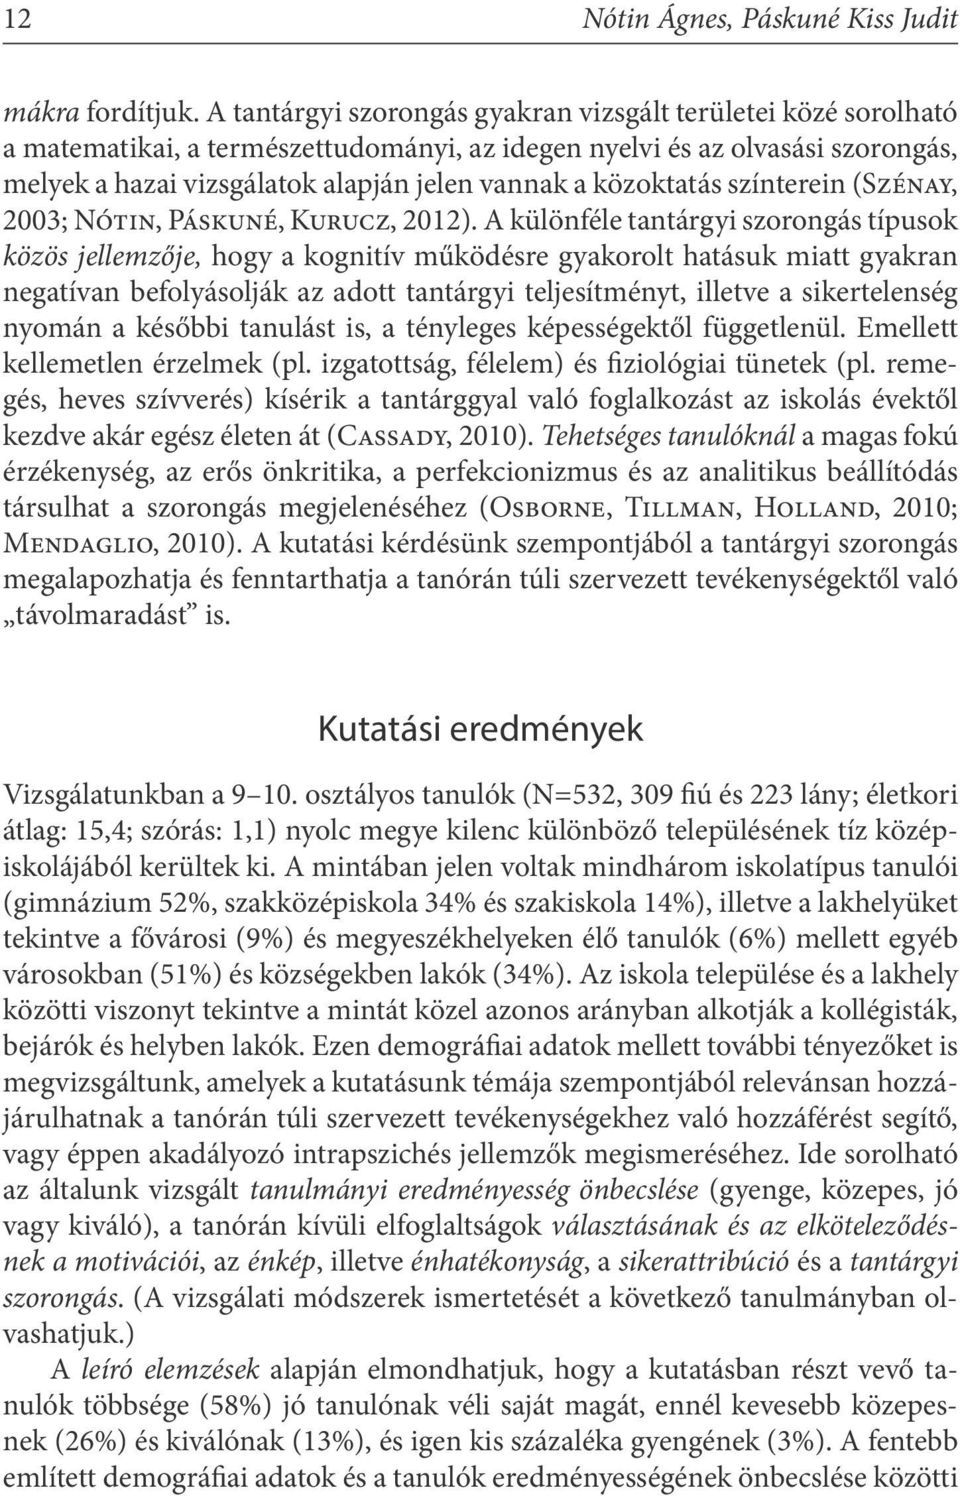 közoktatás színterein (Szénay, 2003; Nótin, Páskuné, Kurucz, 2012).